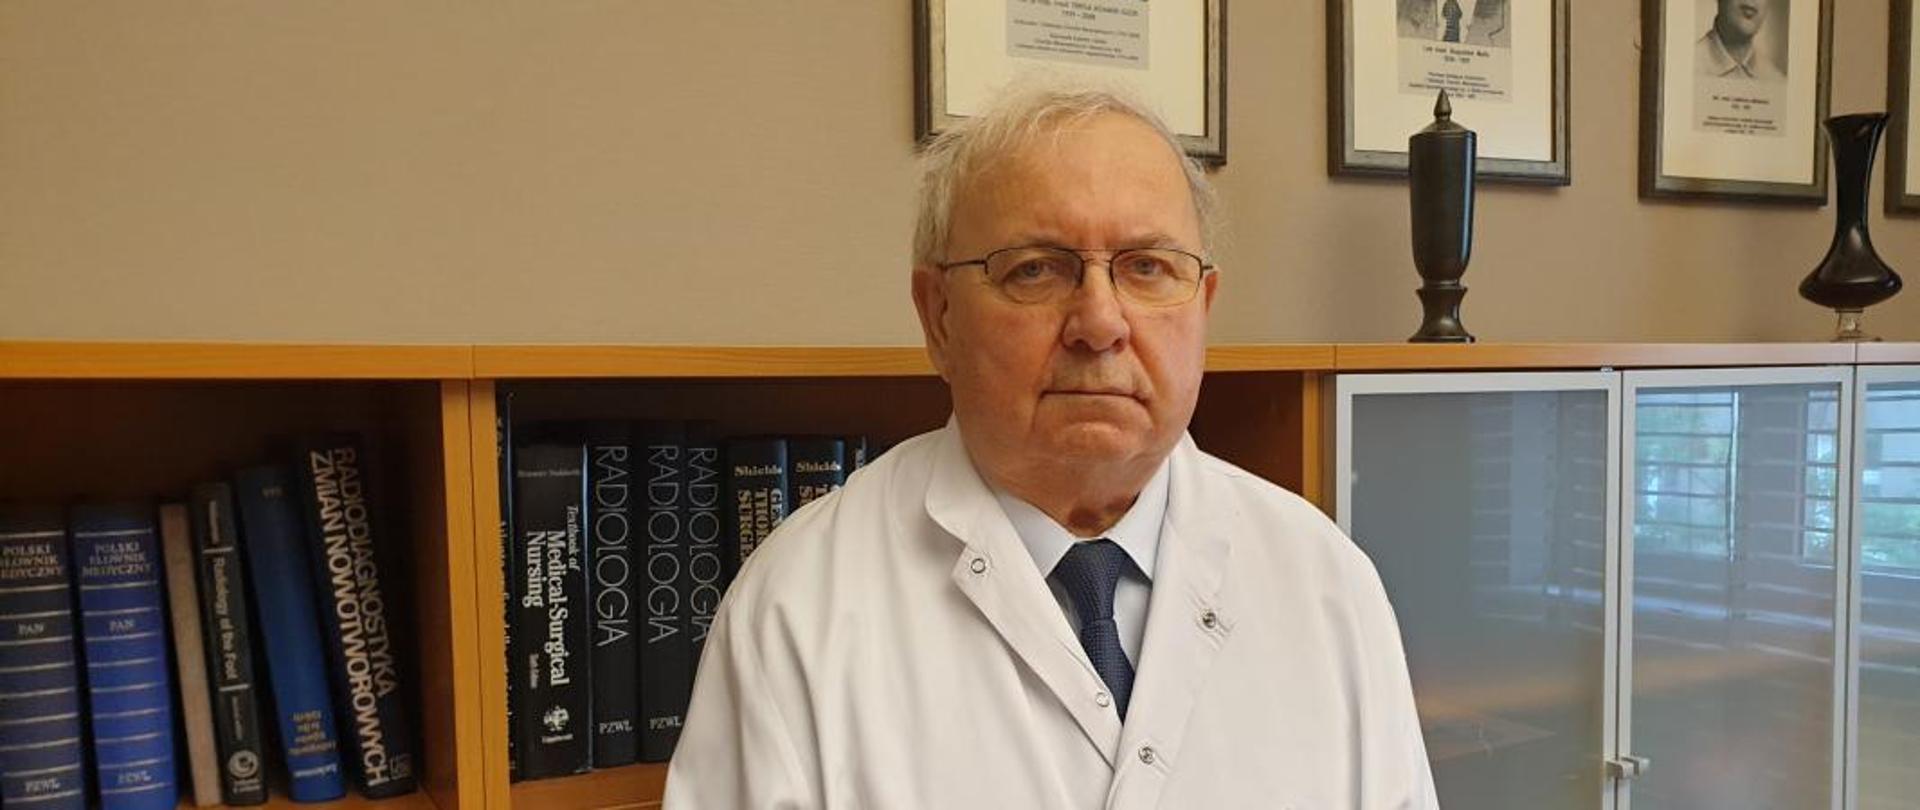 Dr Andrzej Kosiniak-Kamysz